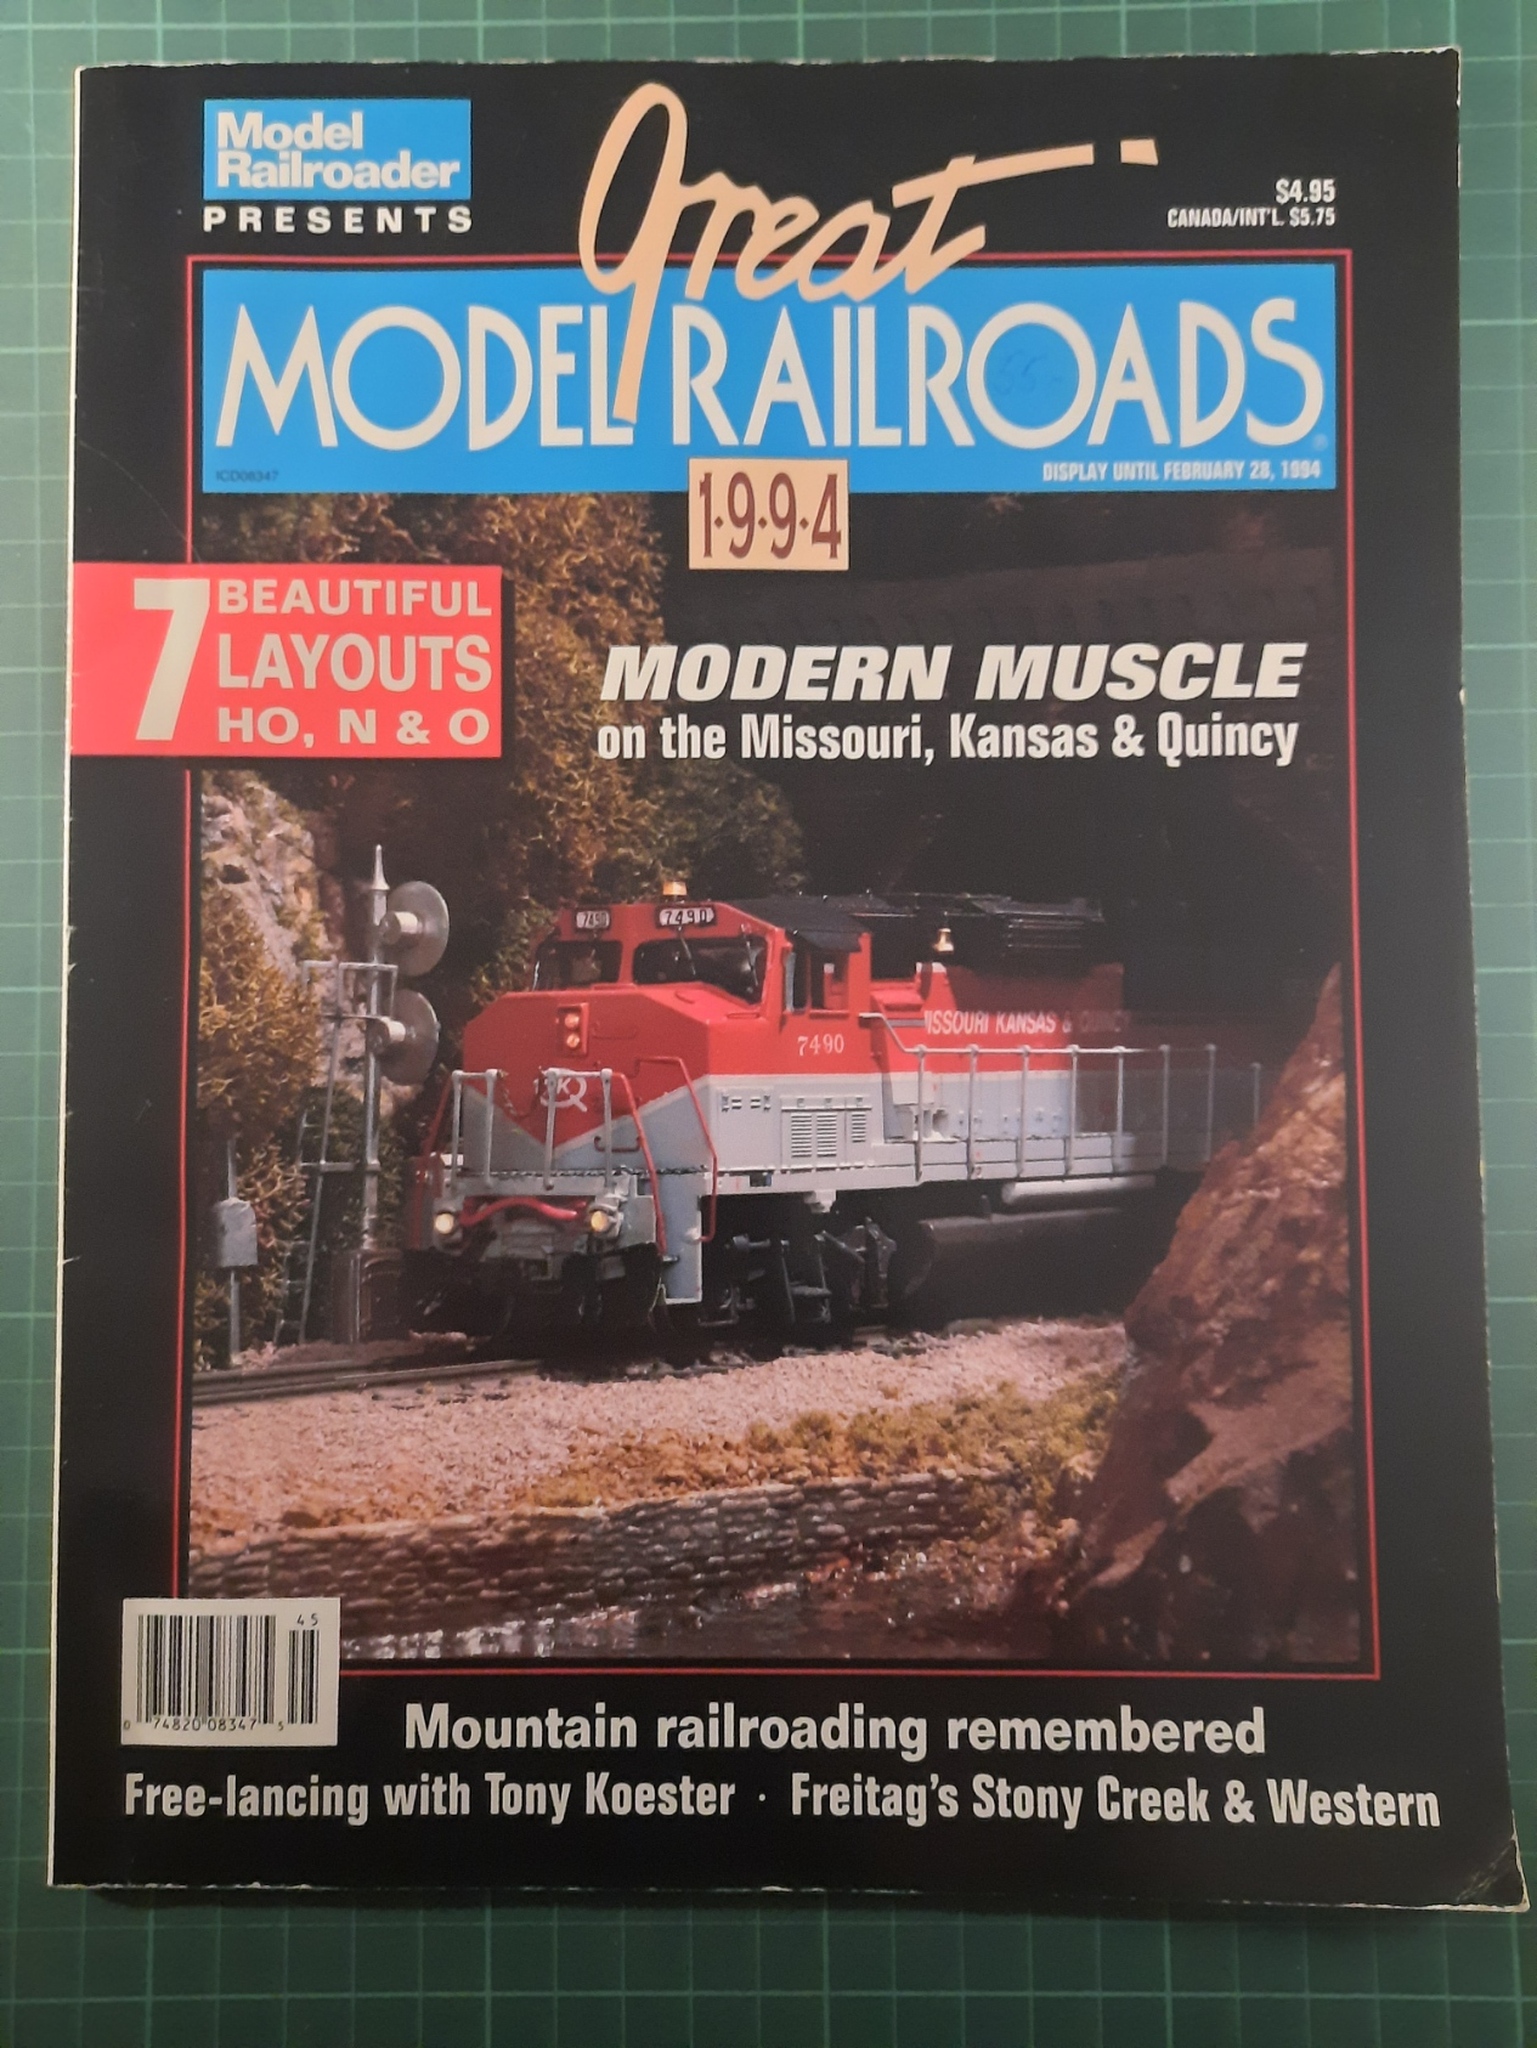 Great model railroads 1994